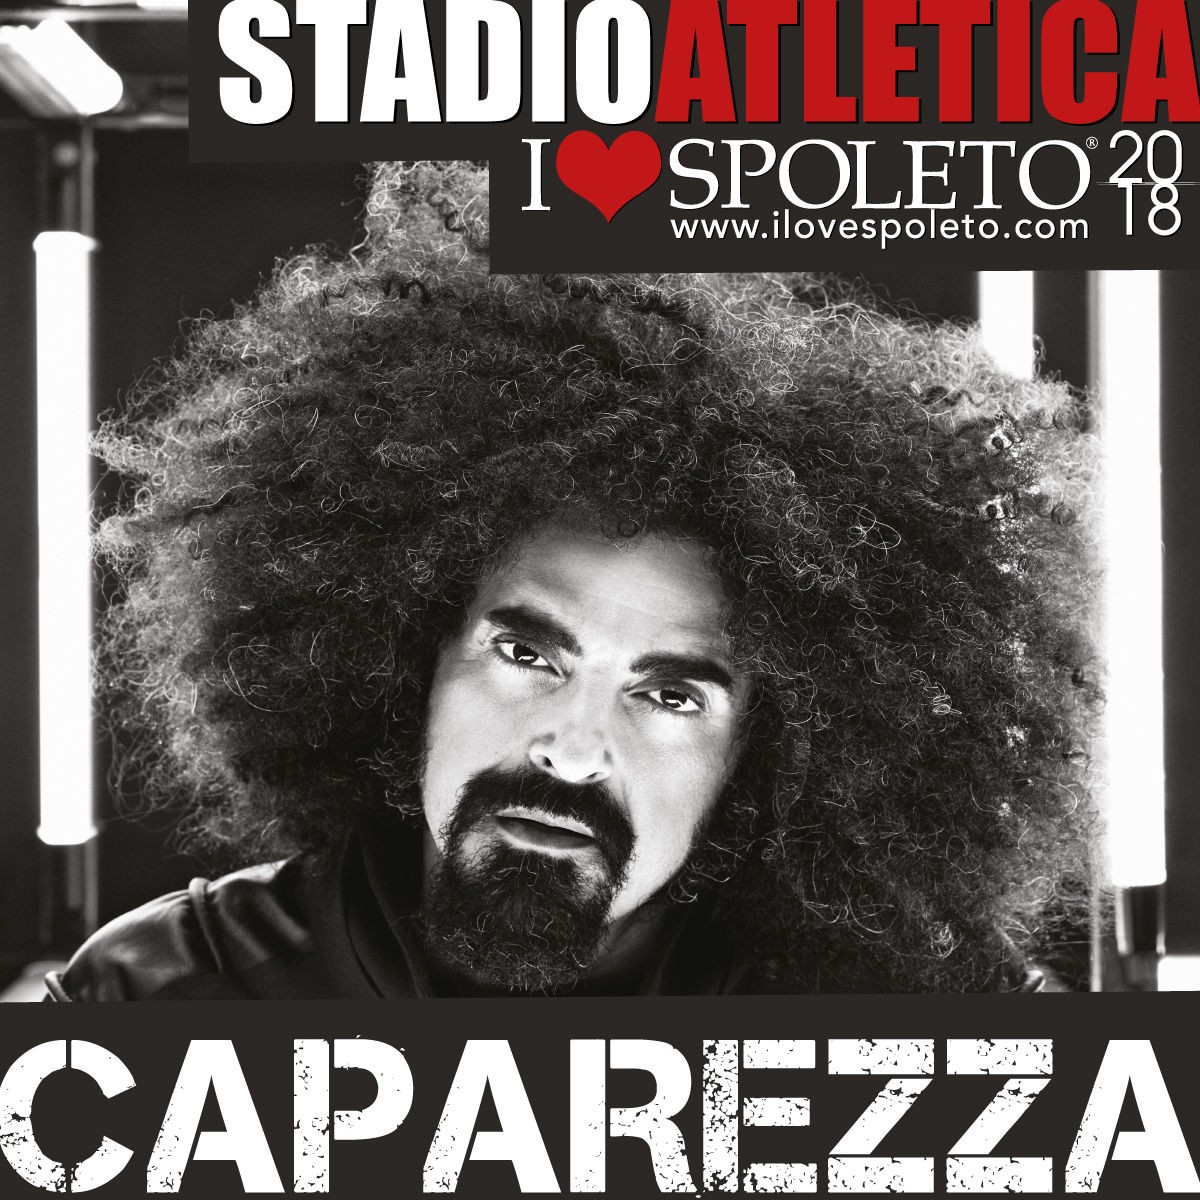 Caparezza Prisoner 709 Tour 2018